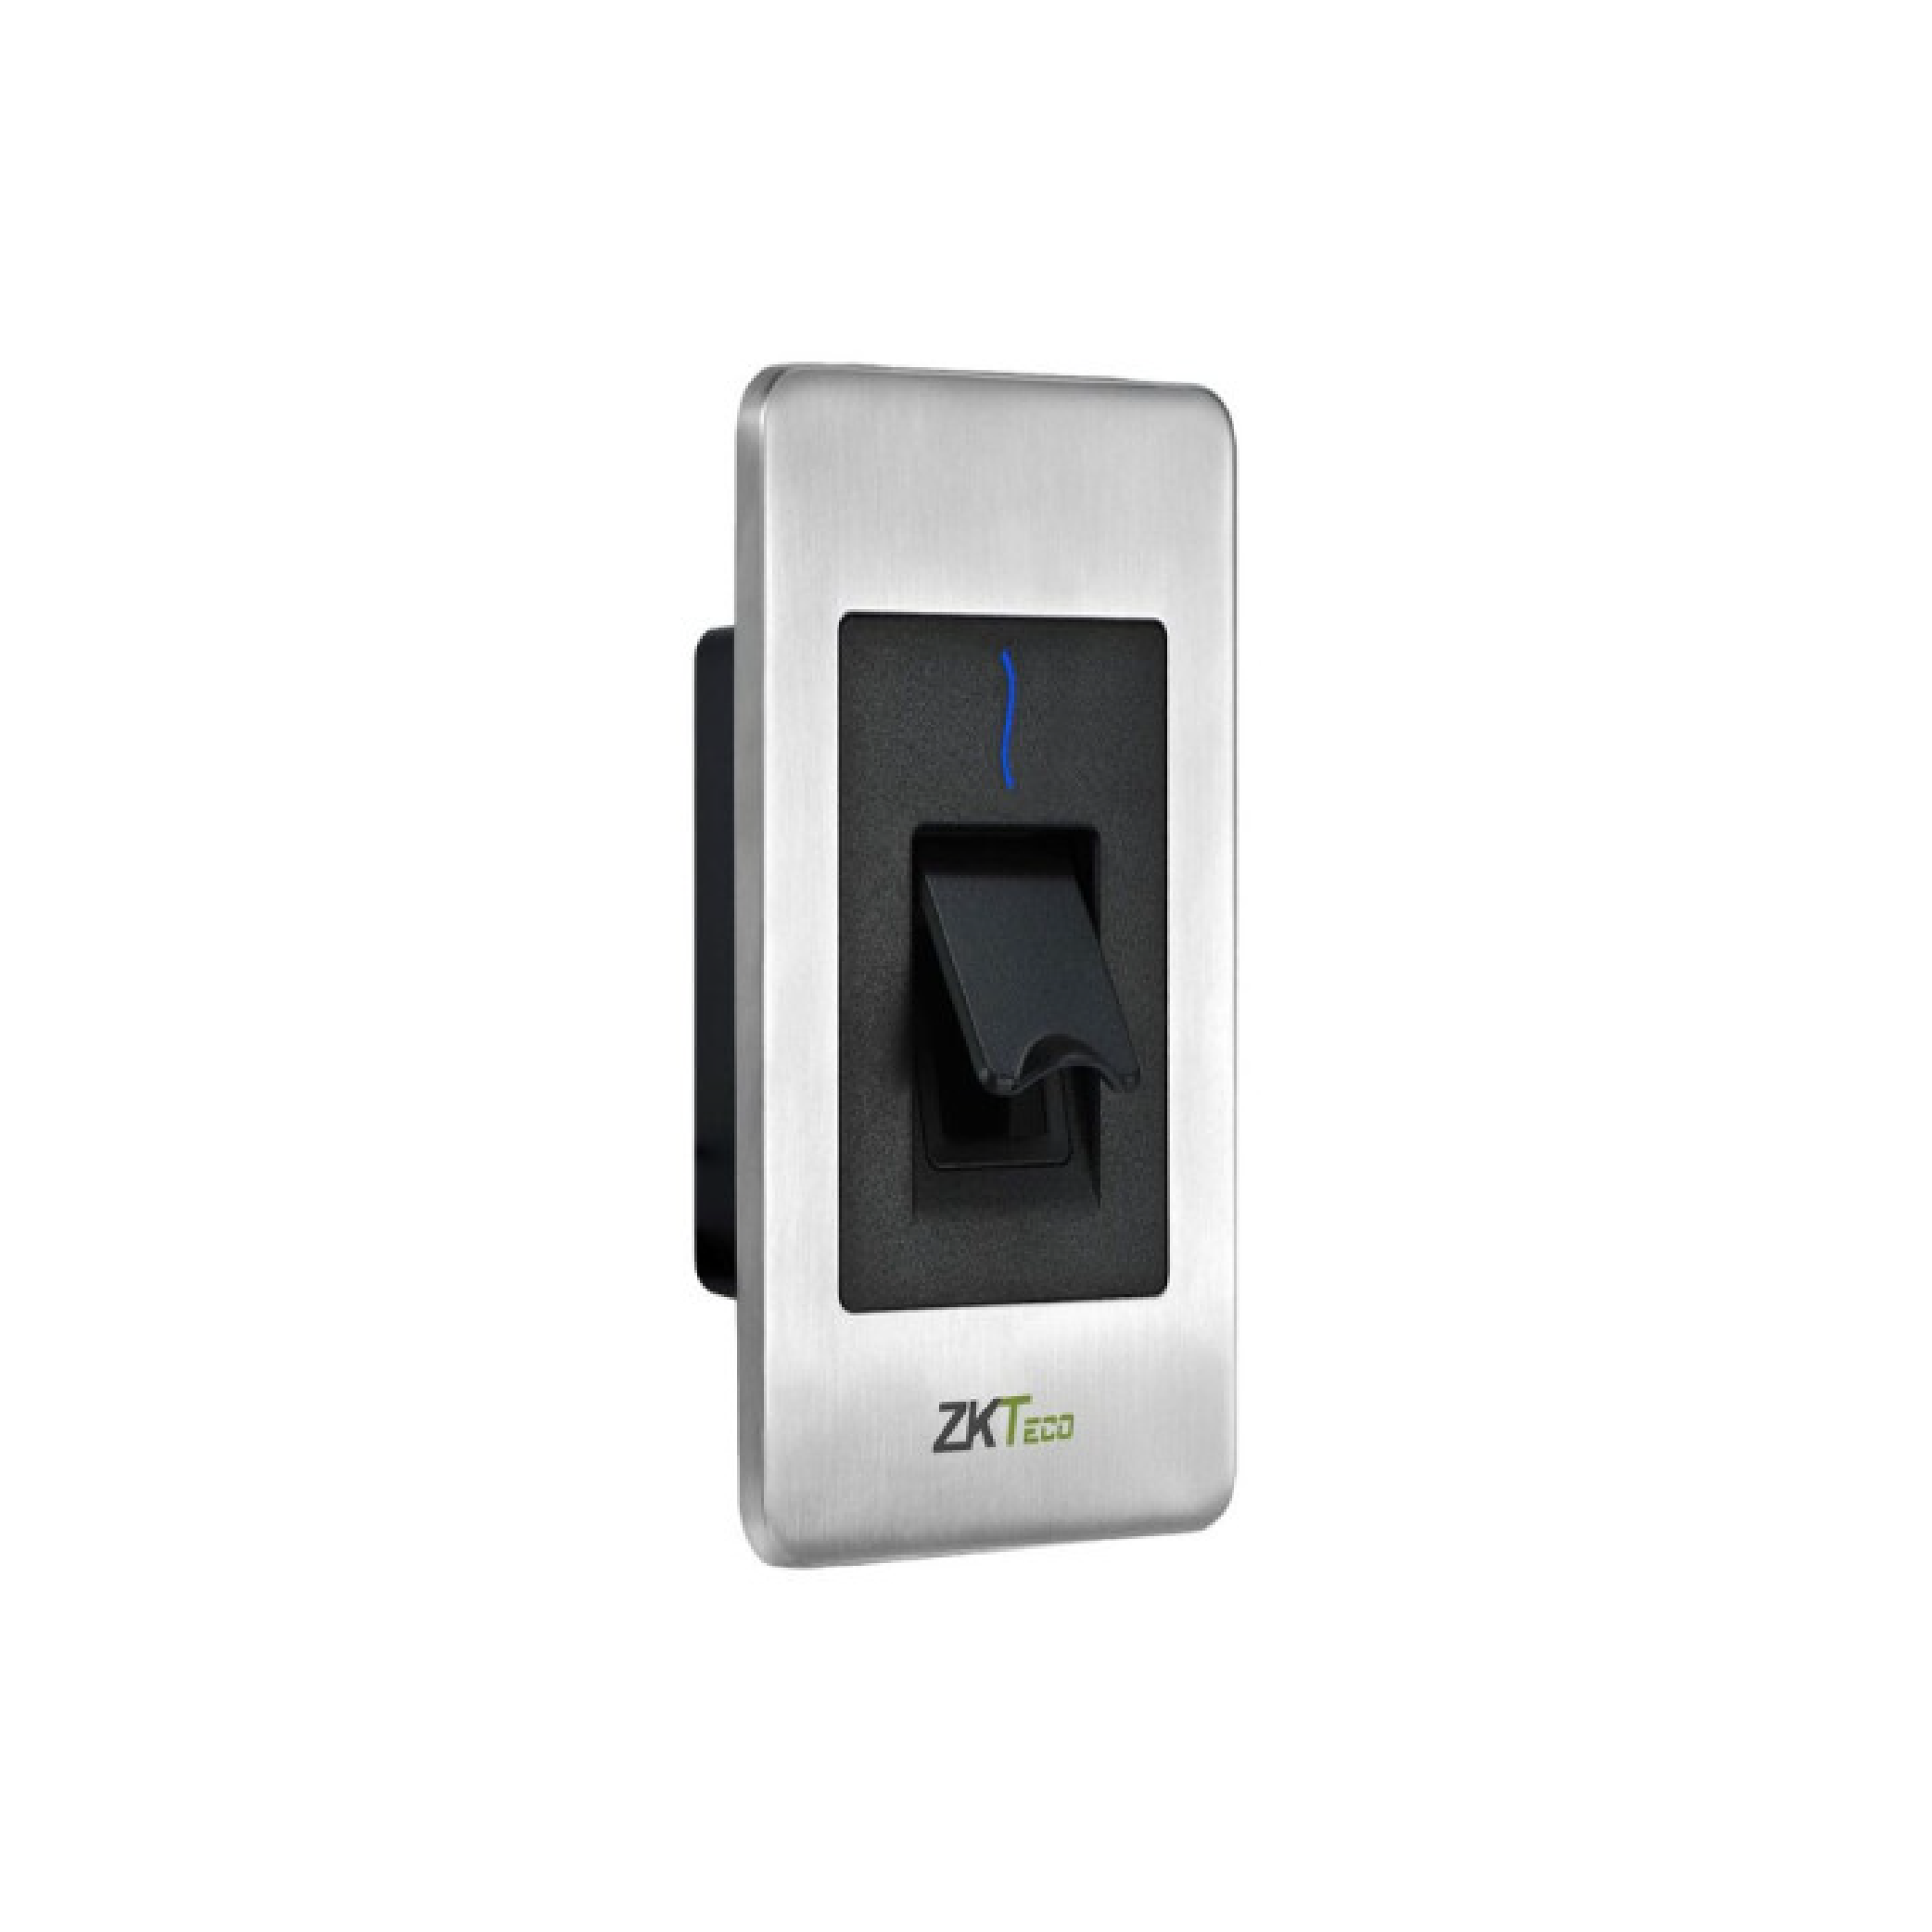 Lector biométrico esclavo de huella (z-id) y tarjeta RFID 125khz, ip65, FR1500-S.